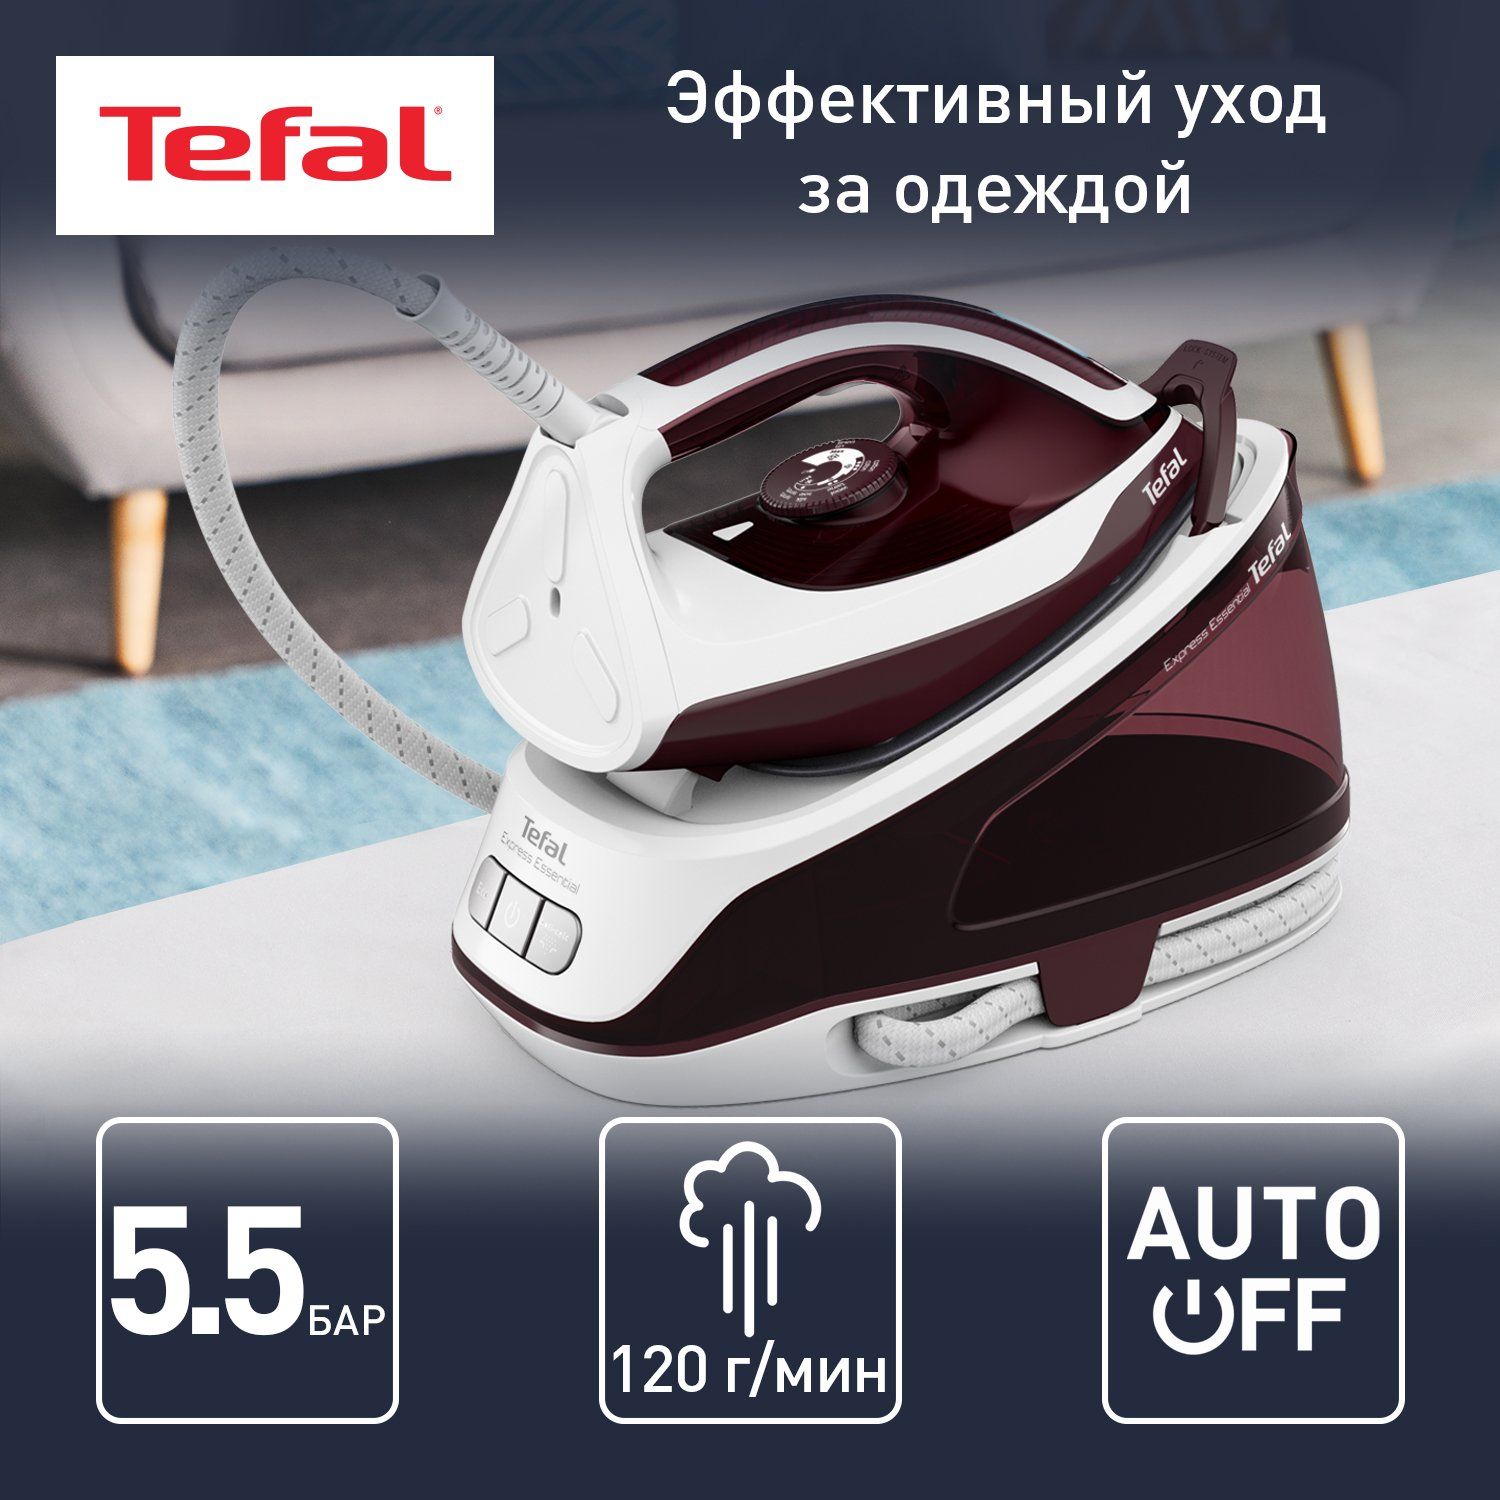 Парогенератор Tefal Express Essential SV6120E0, белый/бордовый - купить в Мегамаркет МСК Подольск, цена на Мегамаркет